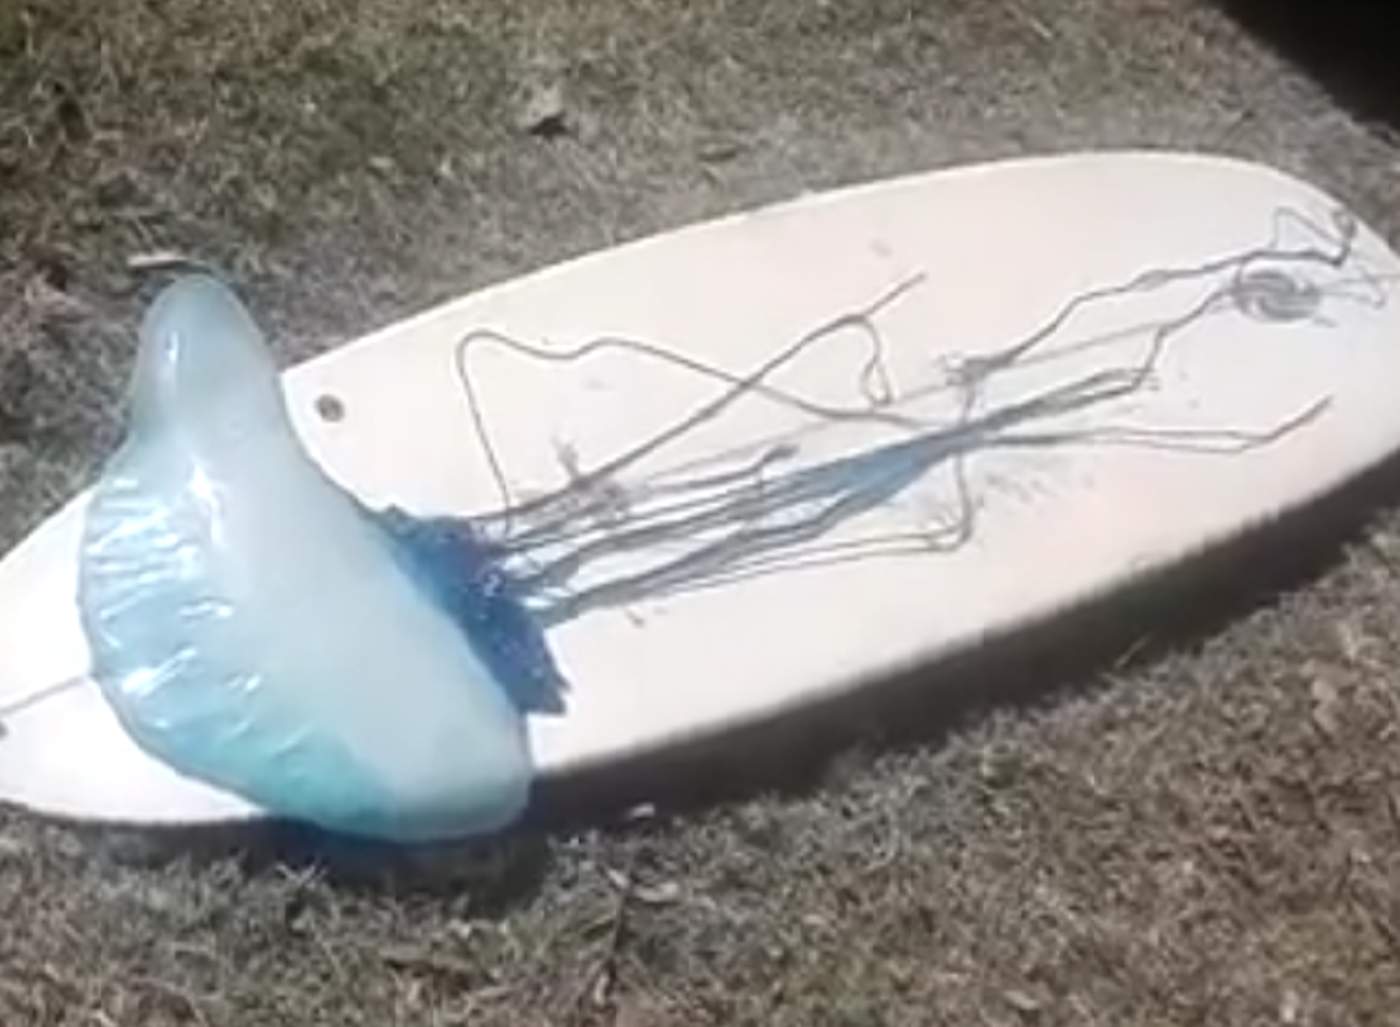 La medusa ‘gigante’ que asustó a un surfista